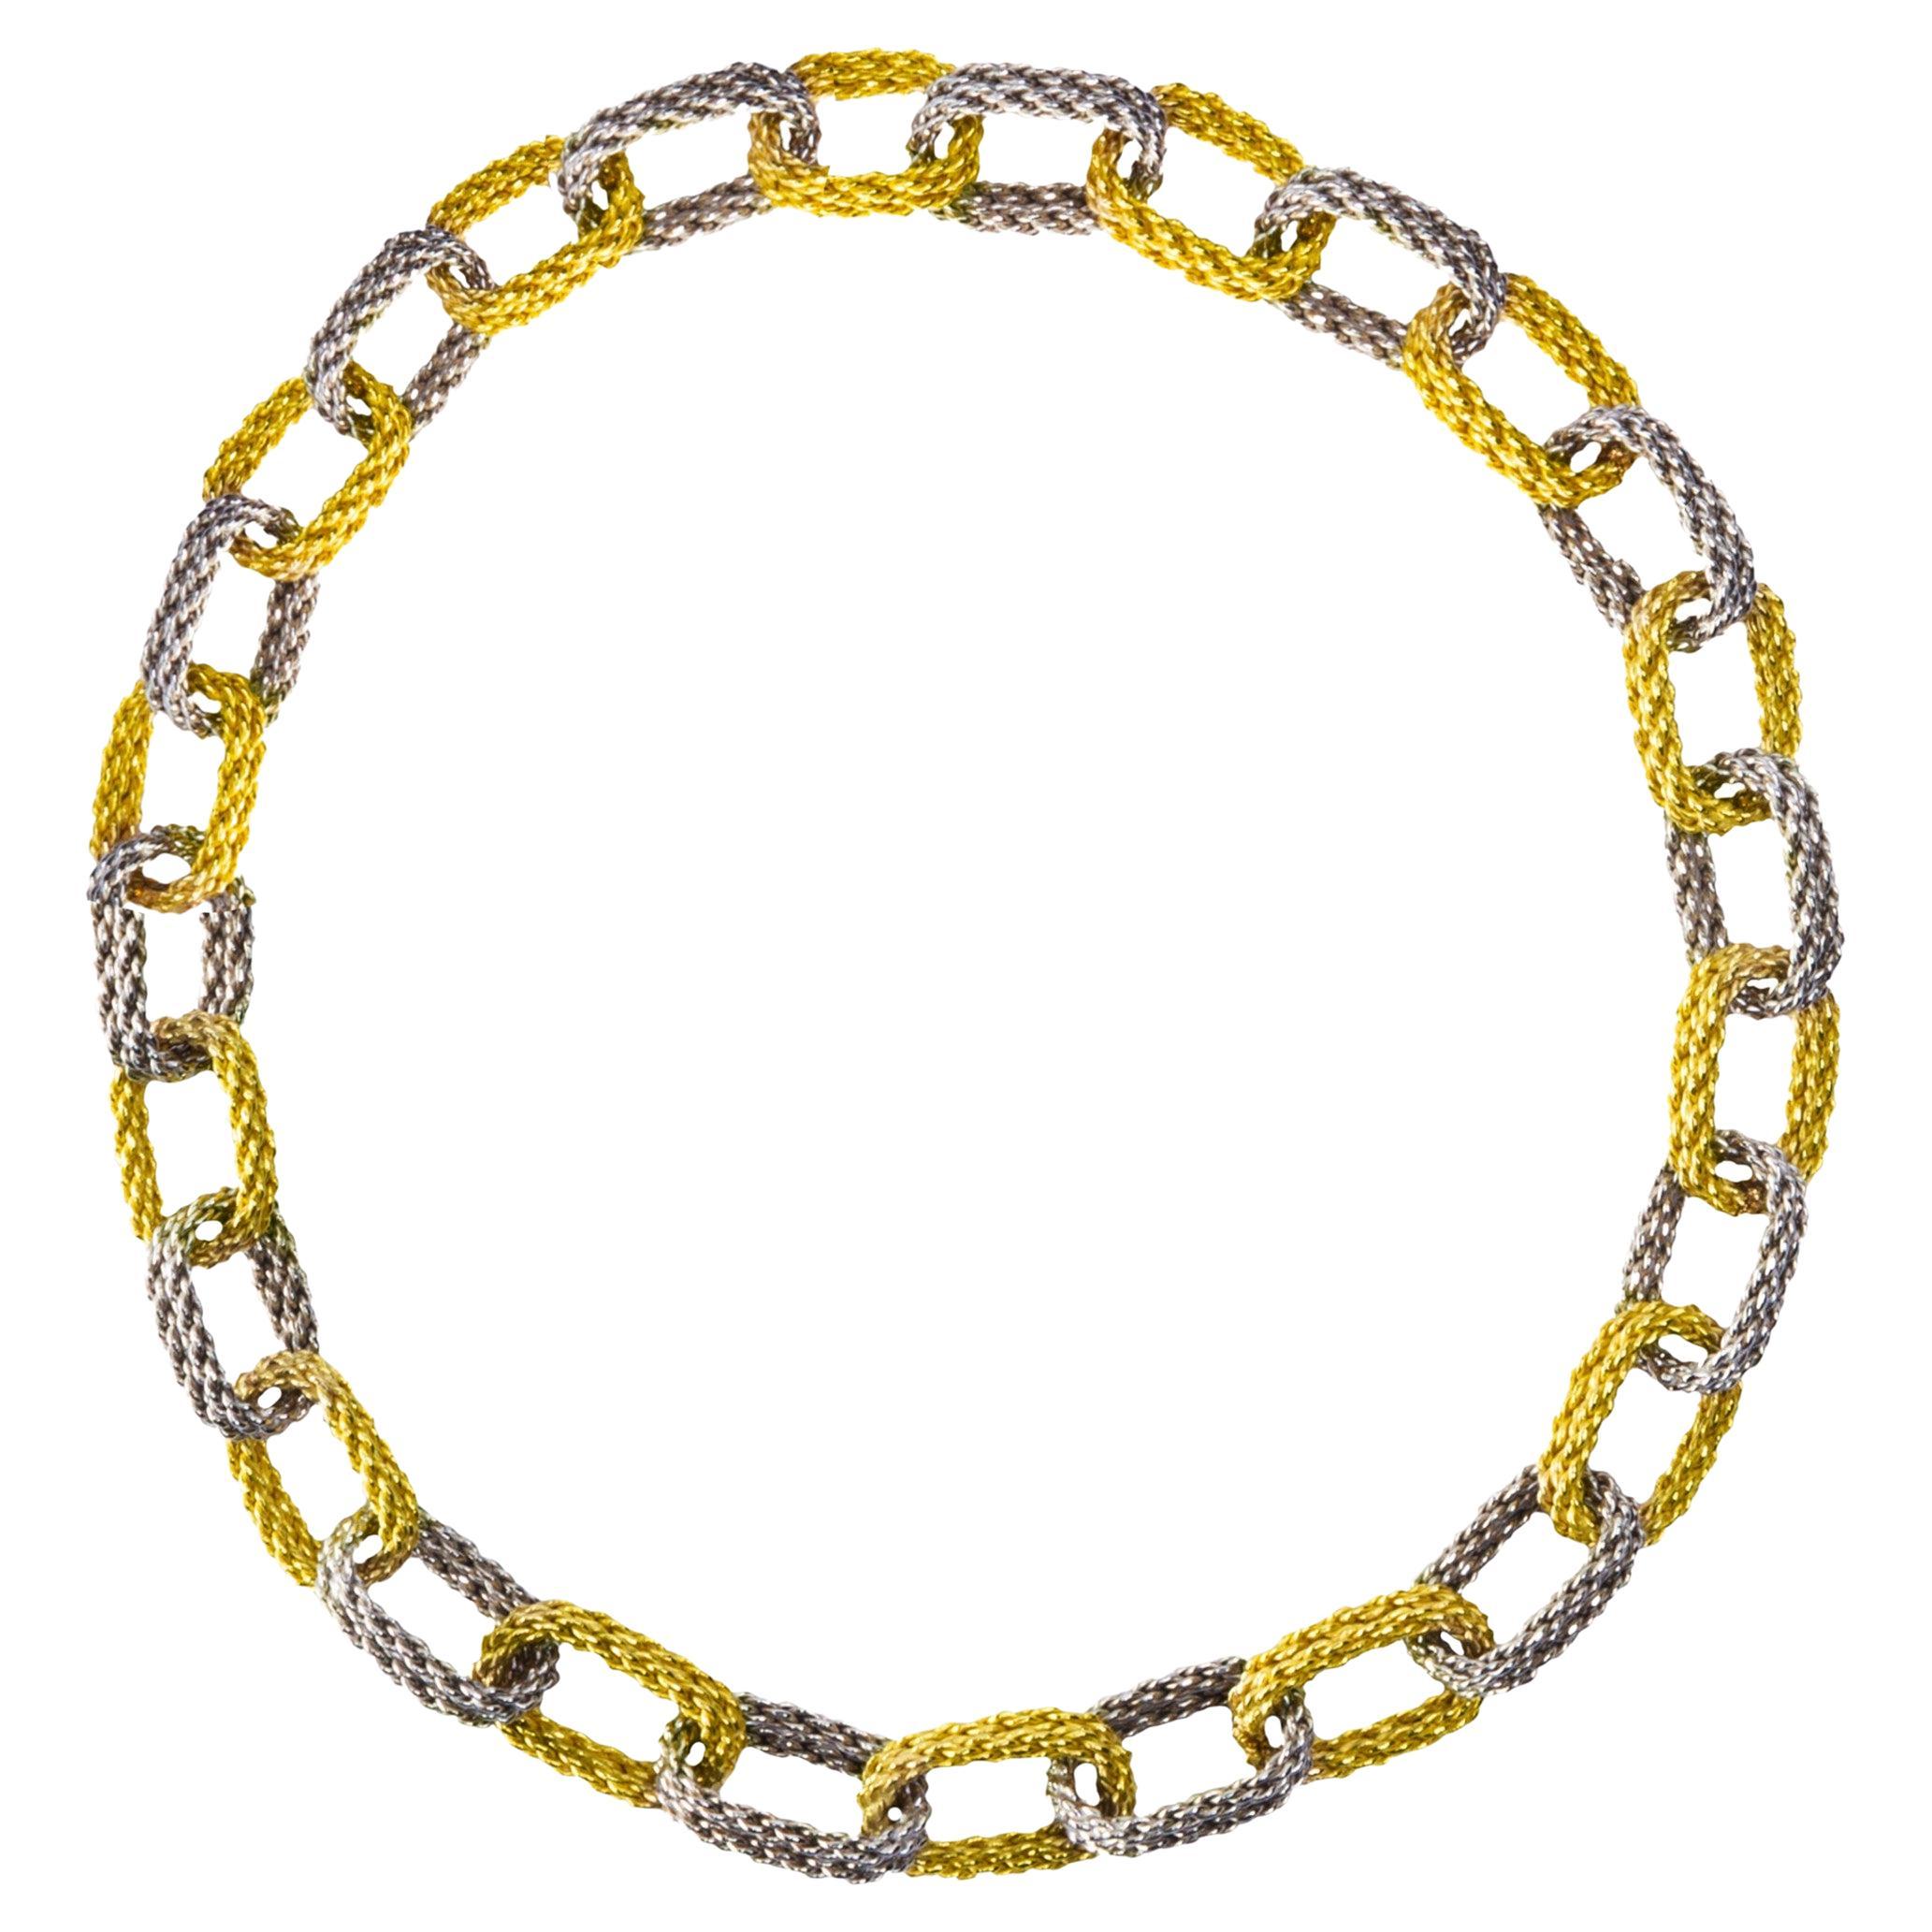 Alex Jona White & Yellow 18 Karat Gold Woven Chain Link Bracelet